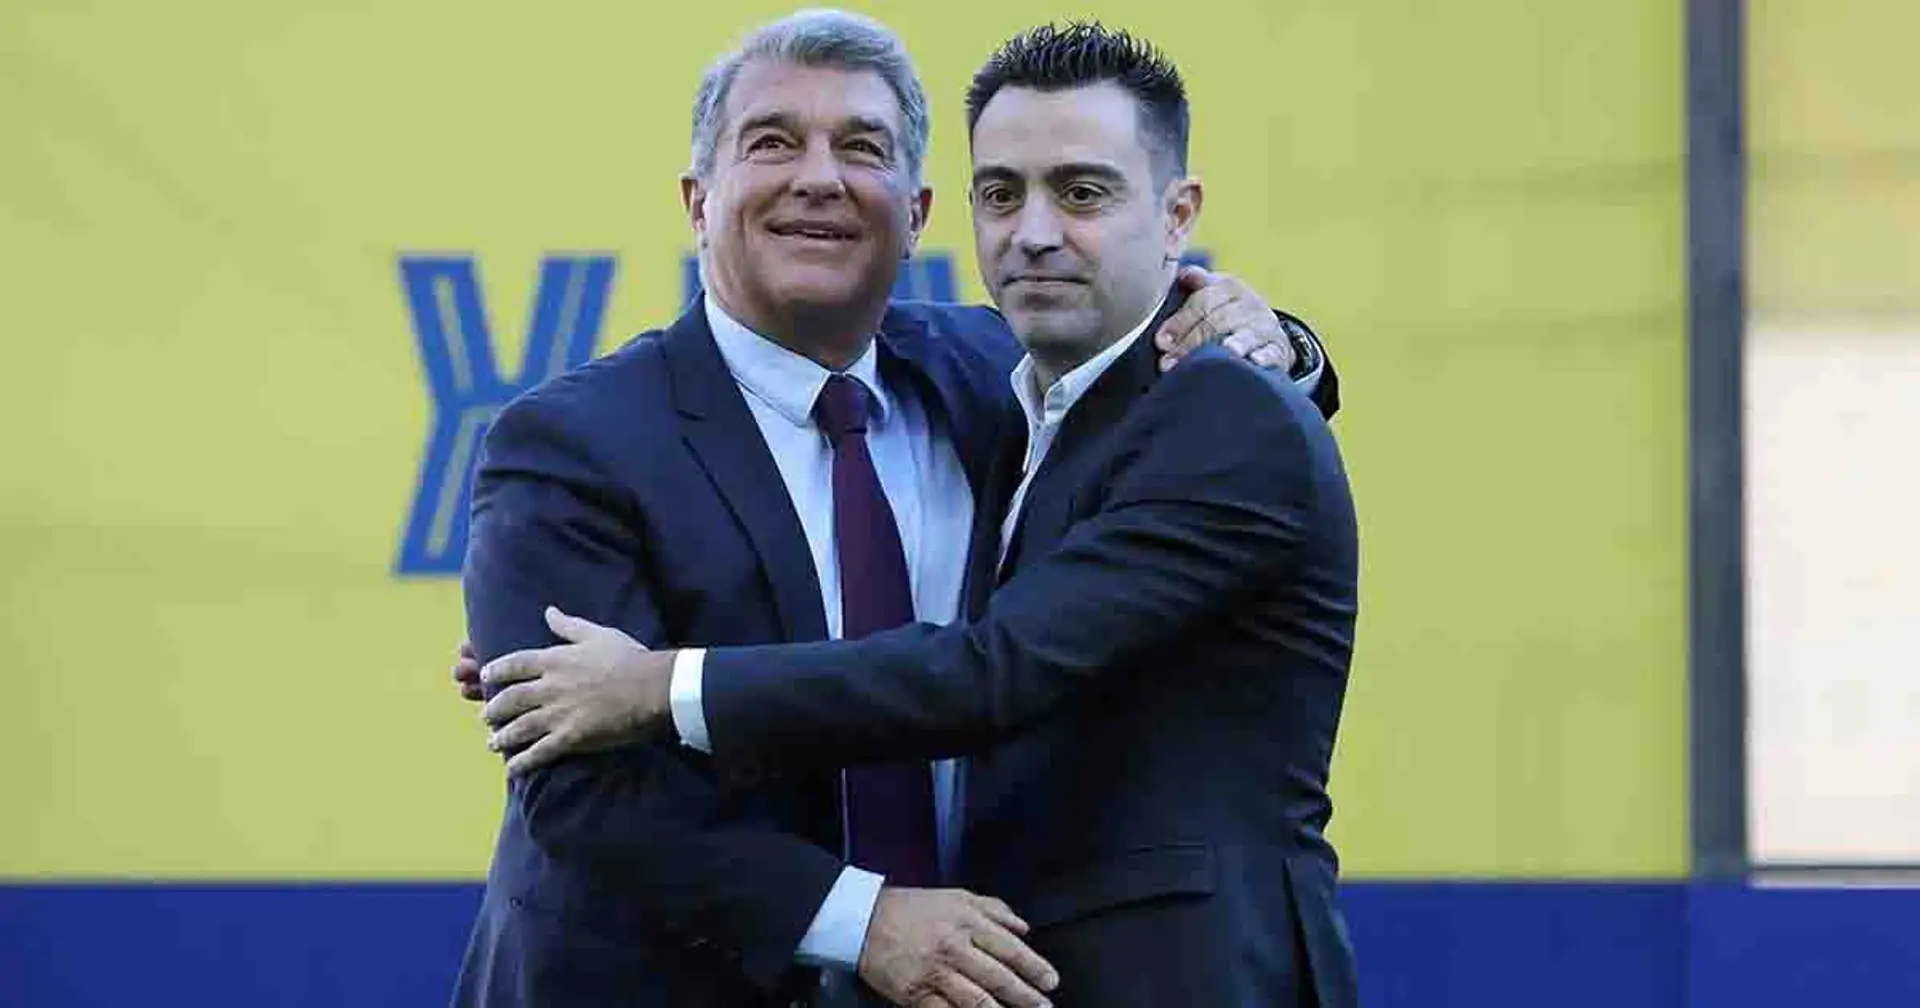 Xavi sur le point de signer un nouveau contrat avec le Barça, les détails révélés